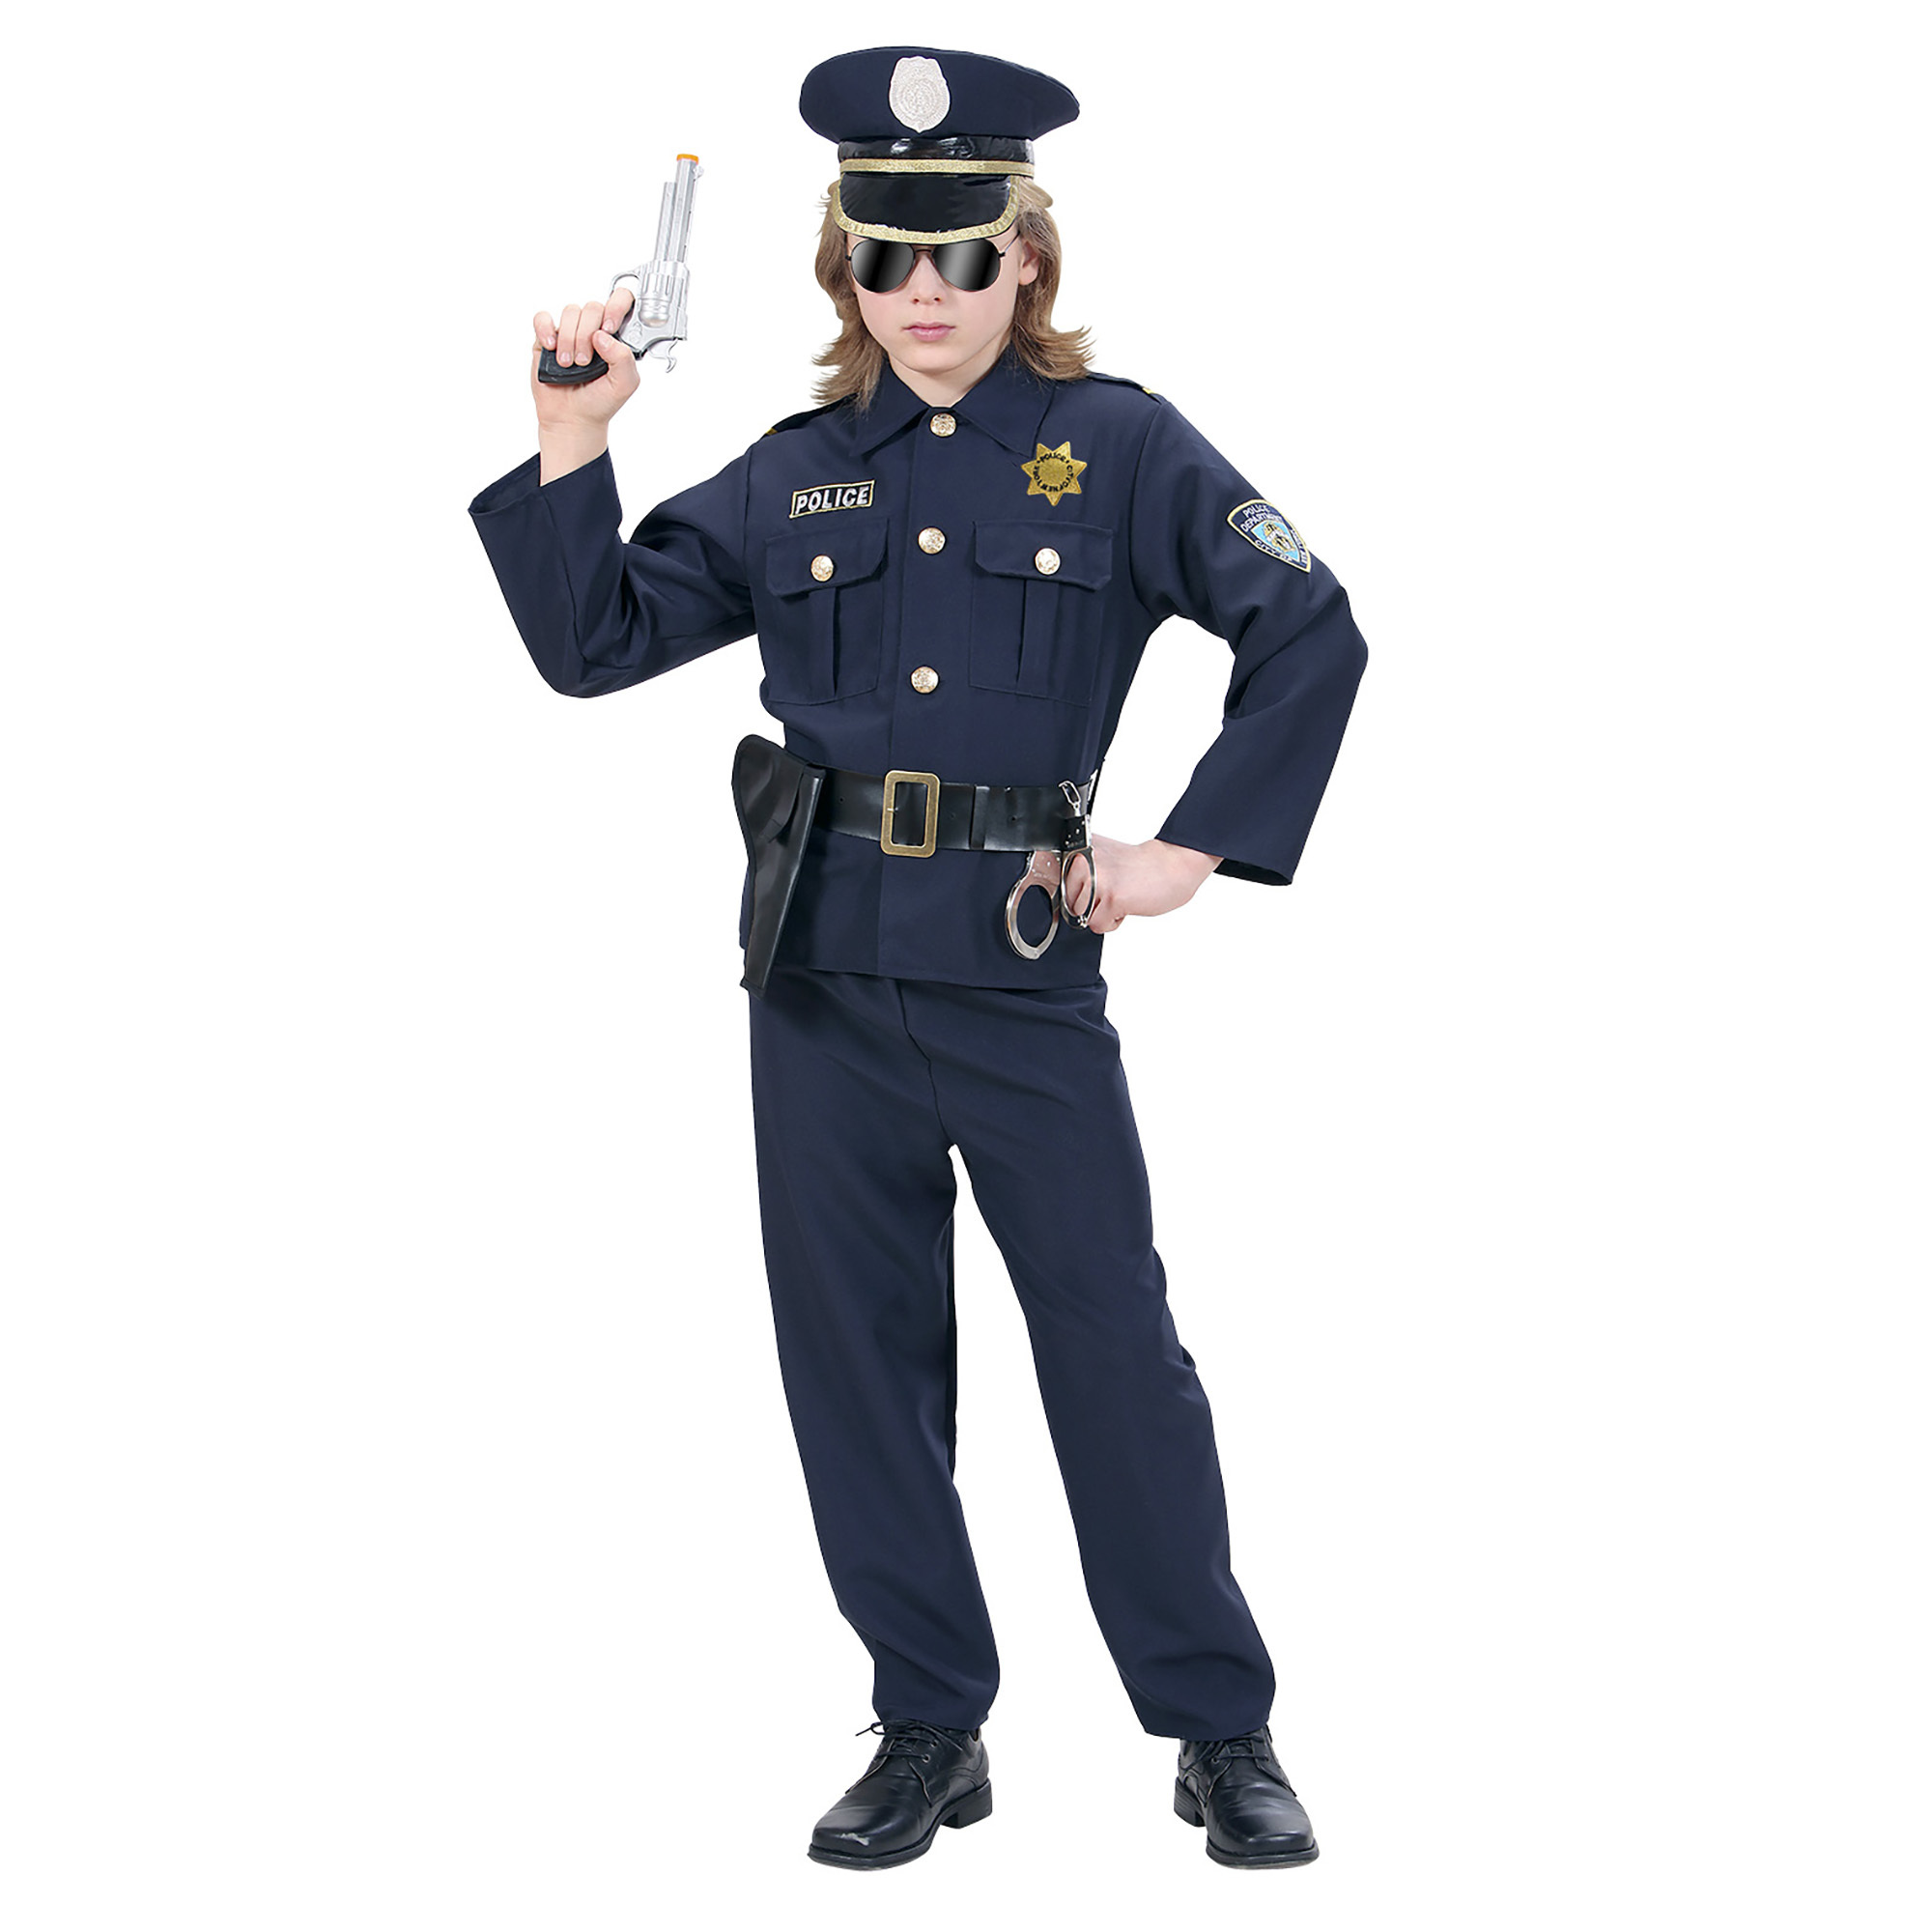 Politie kinder kostuum , politiepak